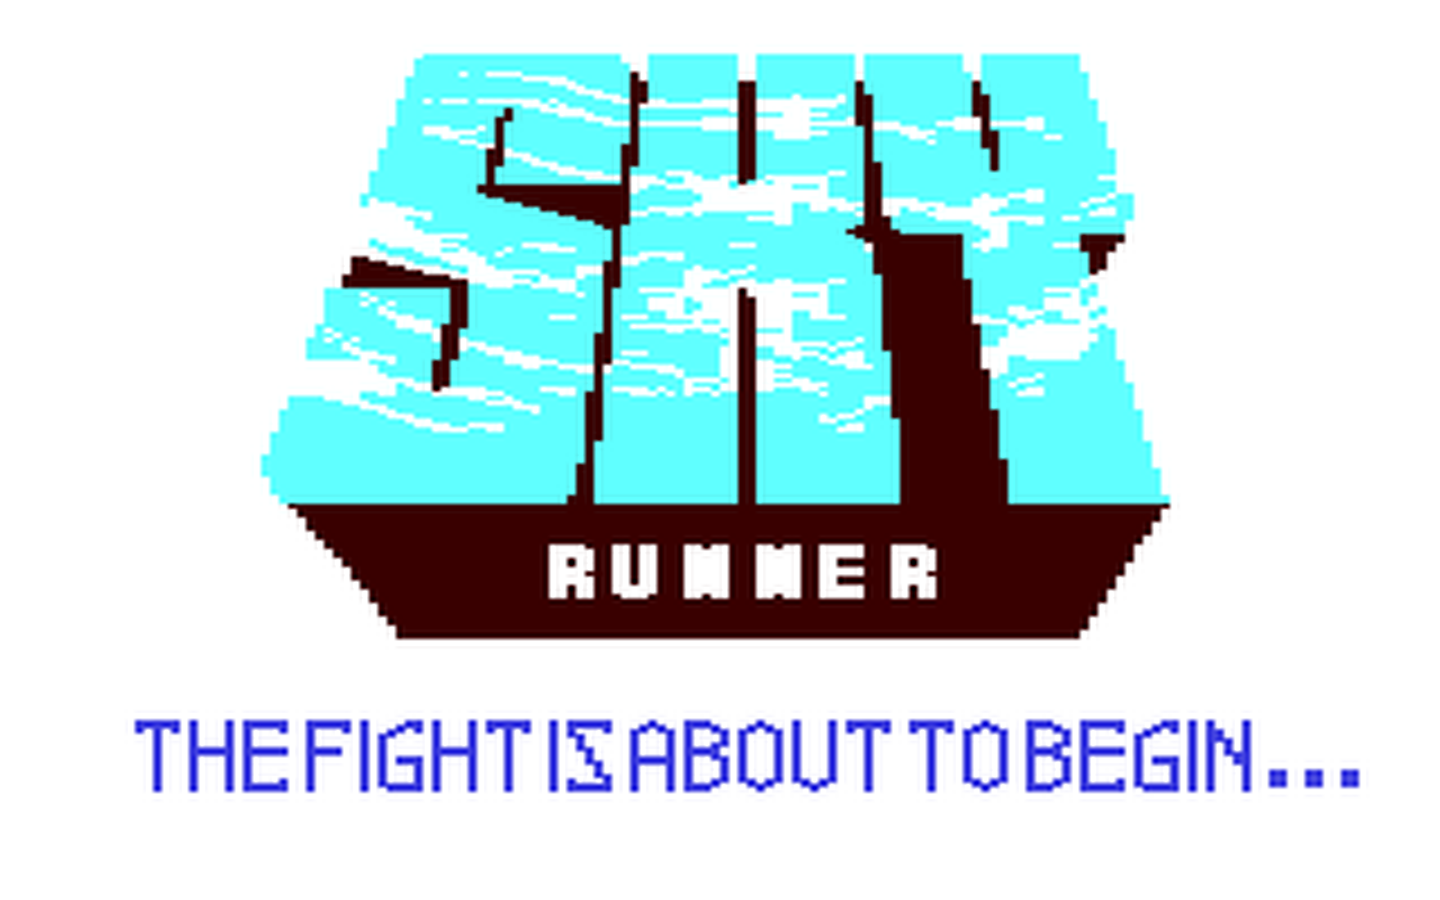 C64 GameBase Sky_Runner Cascade_Games_Ltd. 1986